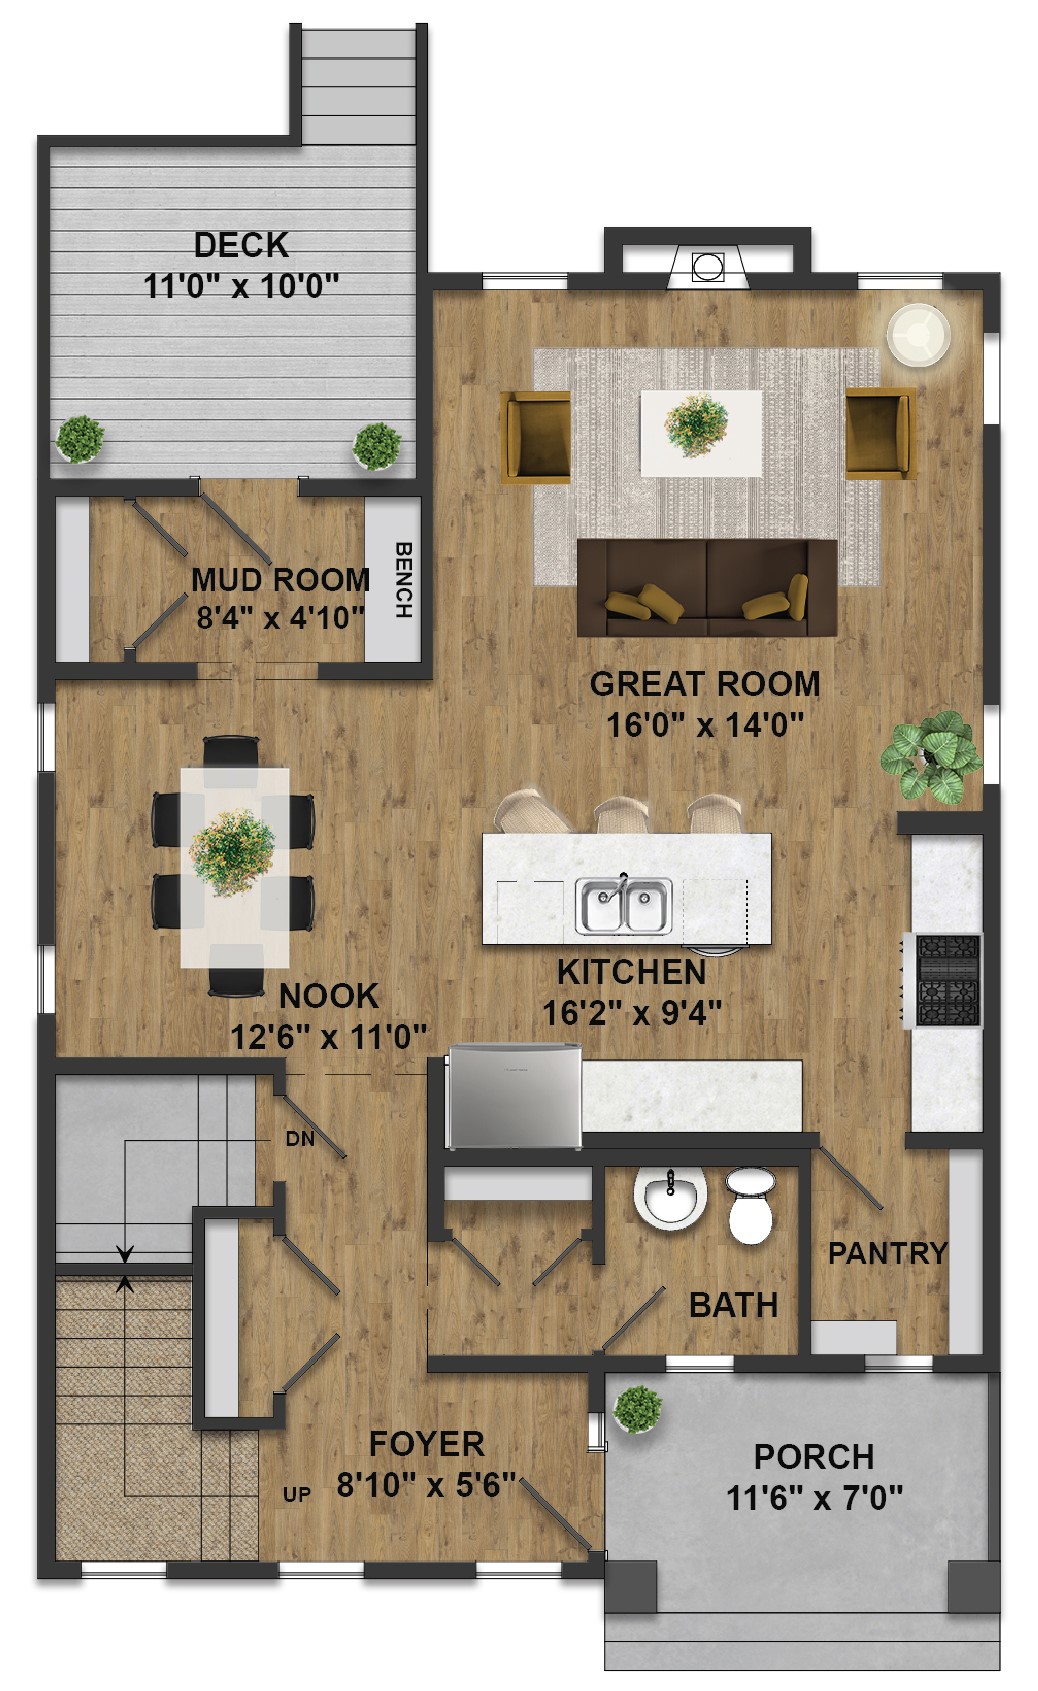 Floor plan images